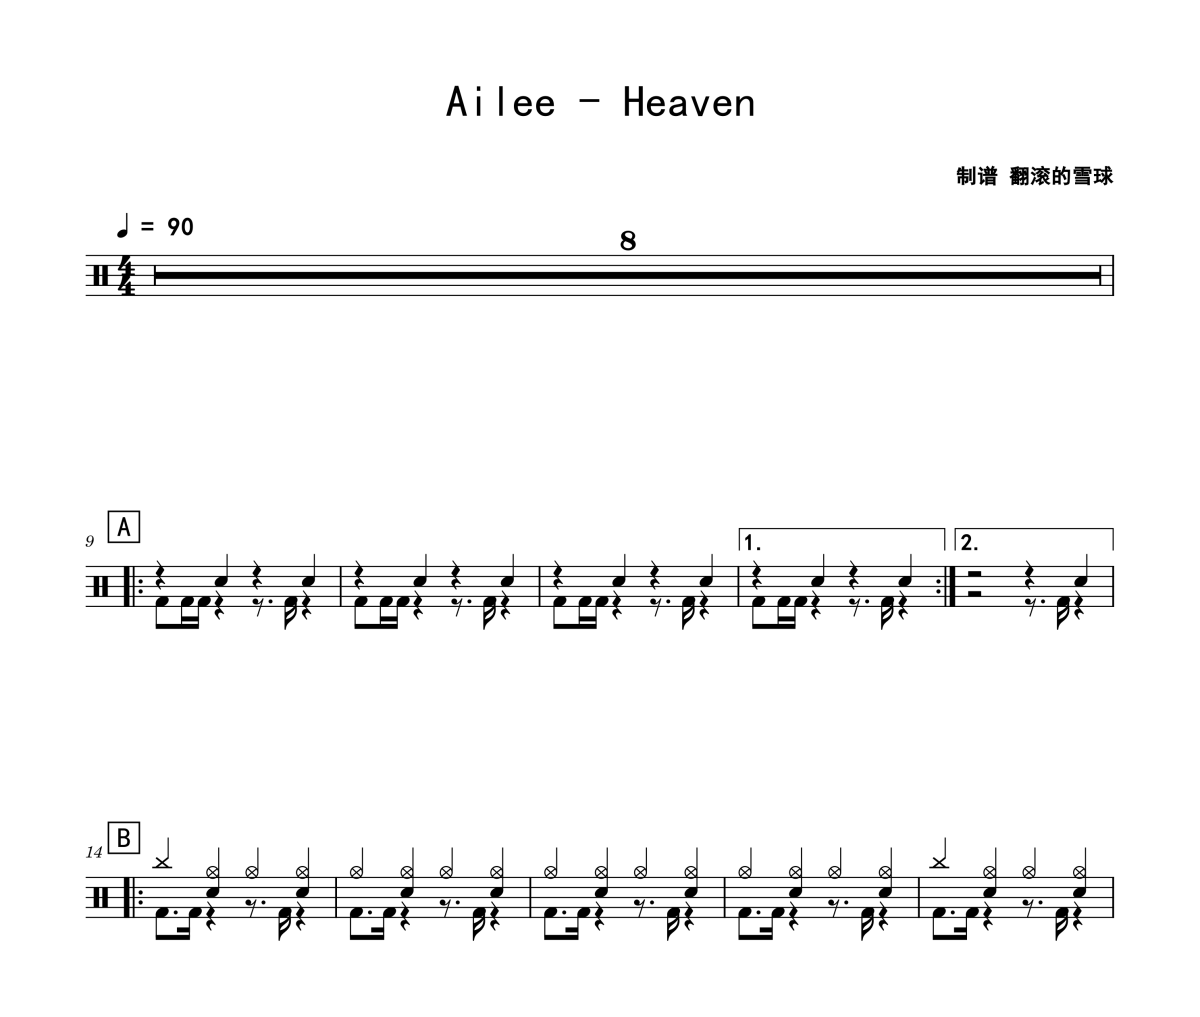 Ailee《Heaven》架子鼓|爵士鼓|鼓谱 翻滚的雪球制谱